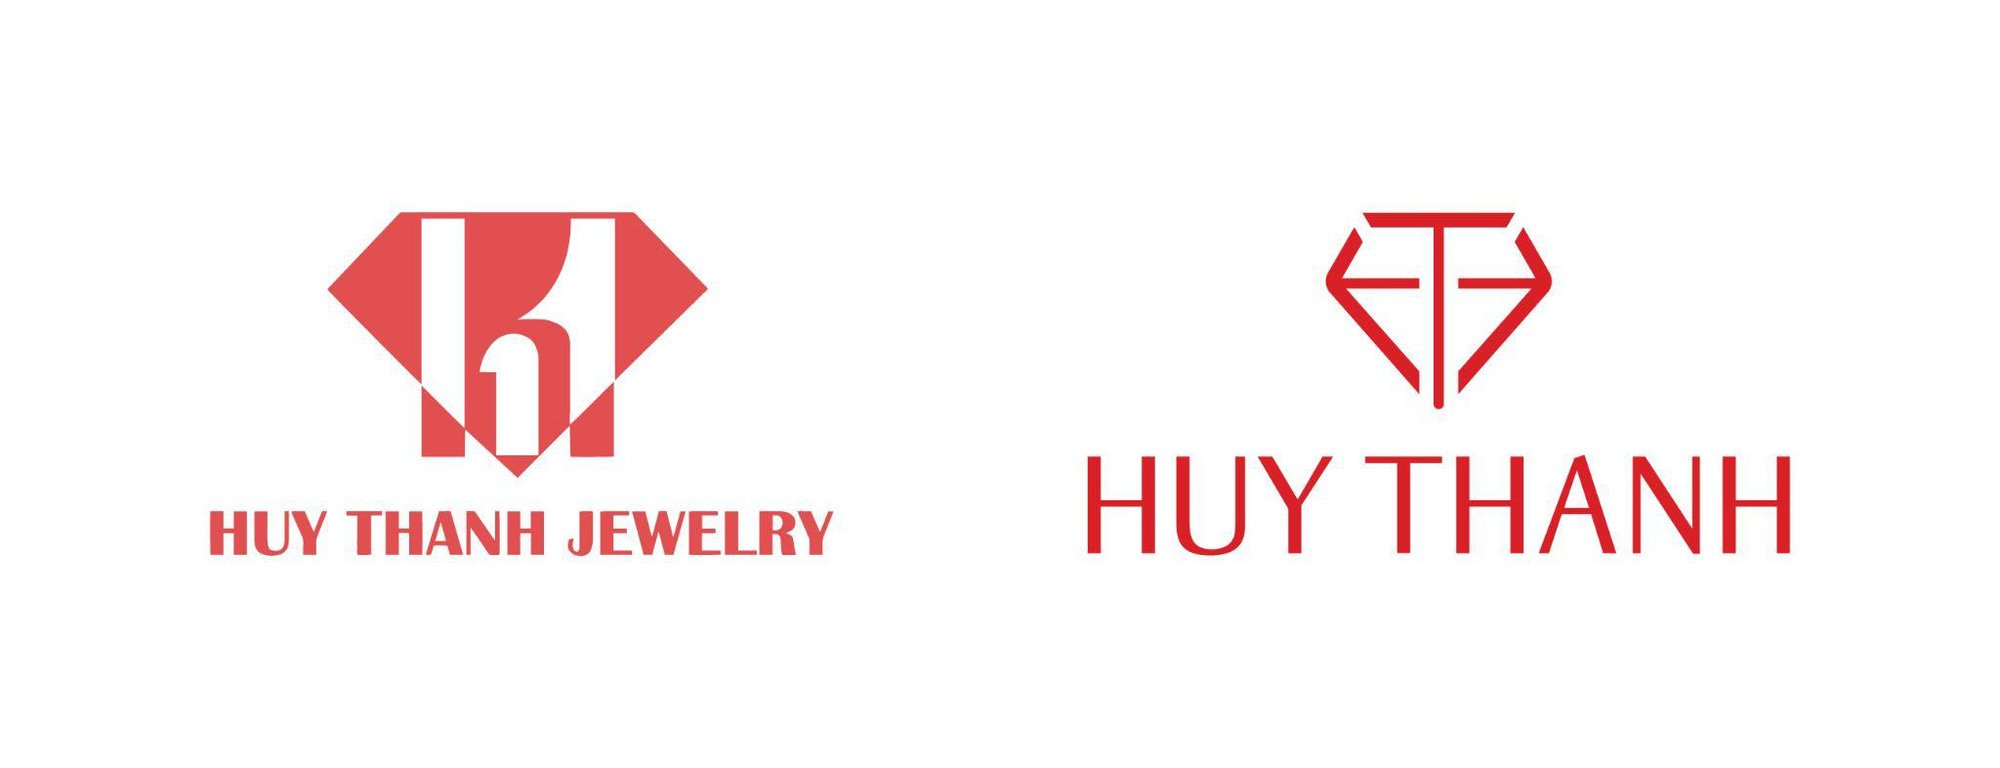 [CAFEBIZ]  Tại sao Huy Thanh Jewelry thay đổi nhận diện thương hiệu?